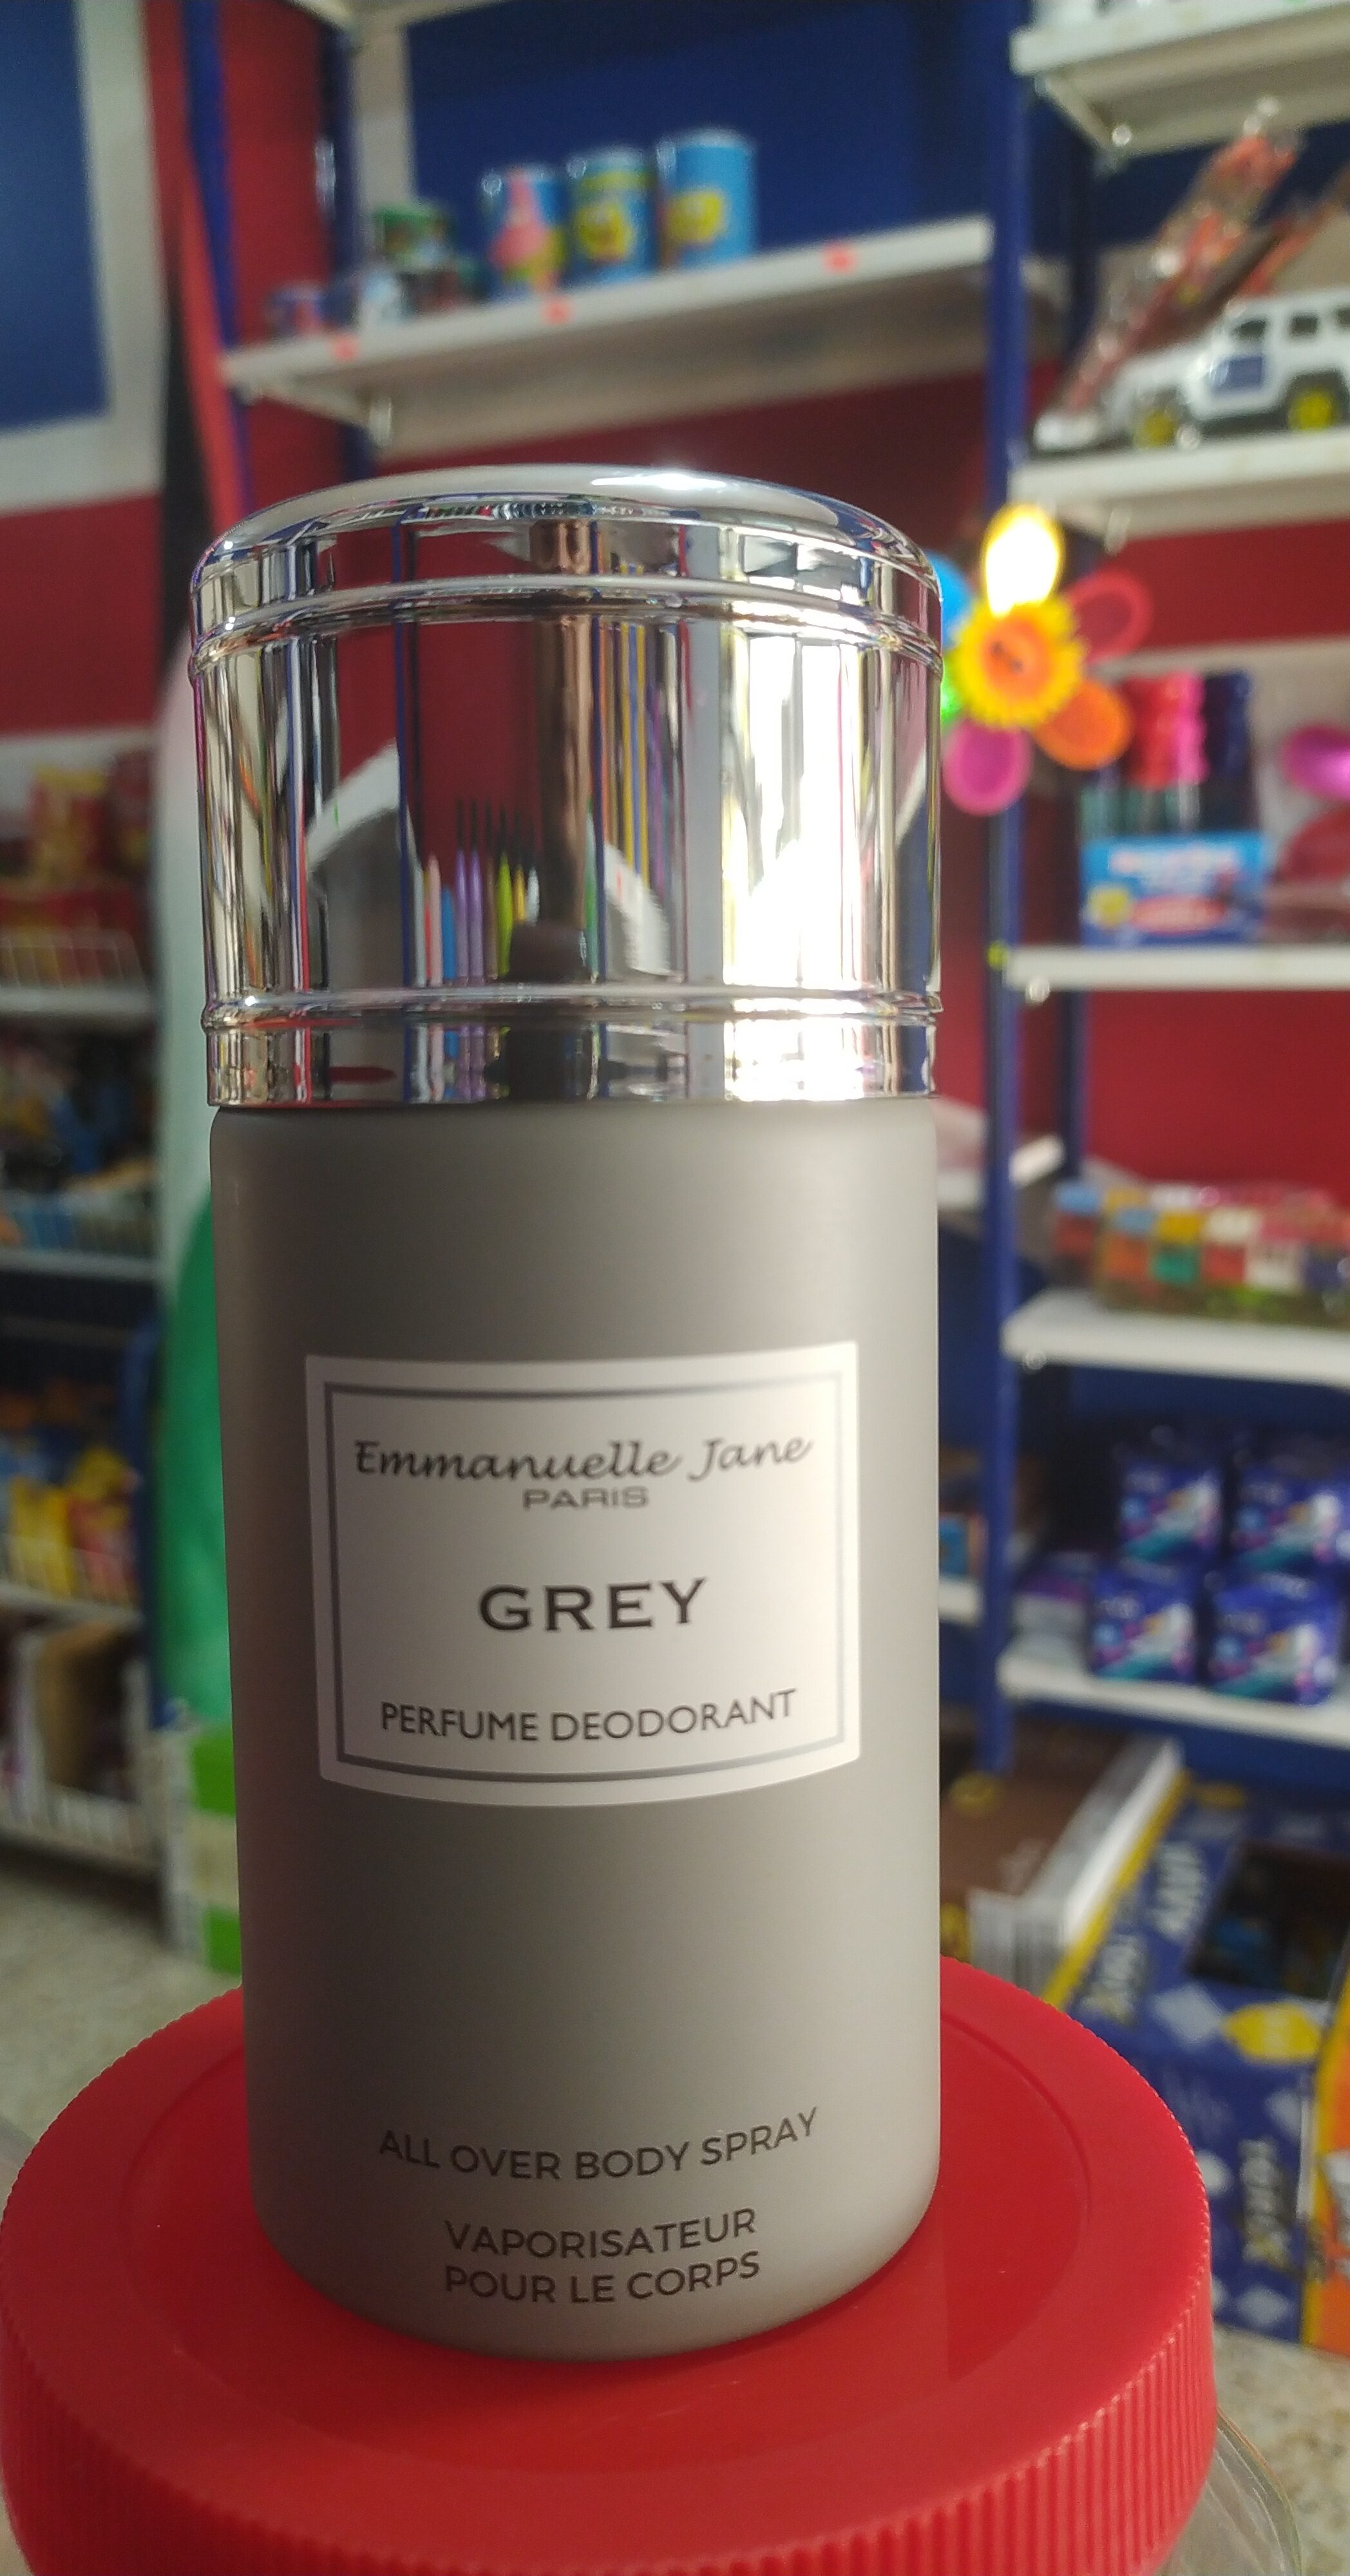 Emmanuel jane grey - Produkt - en